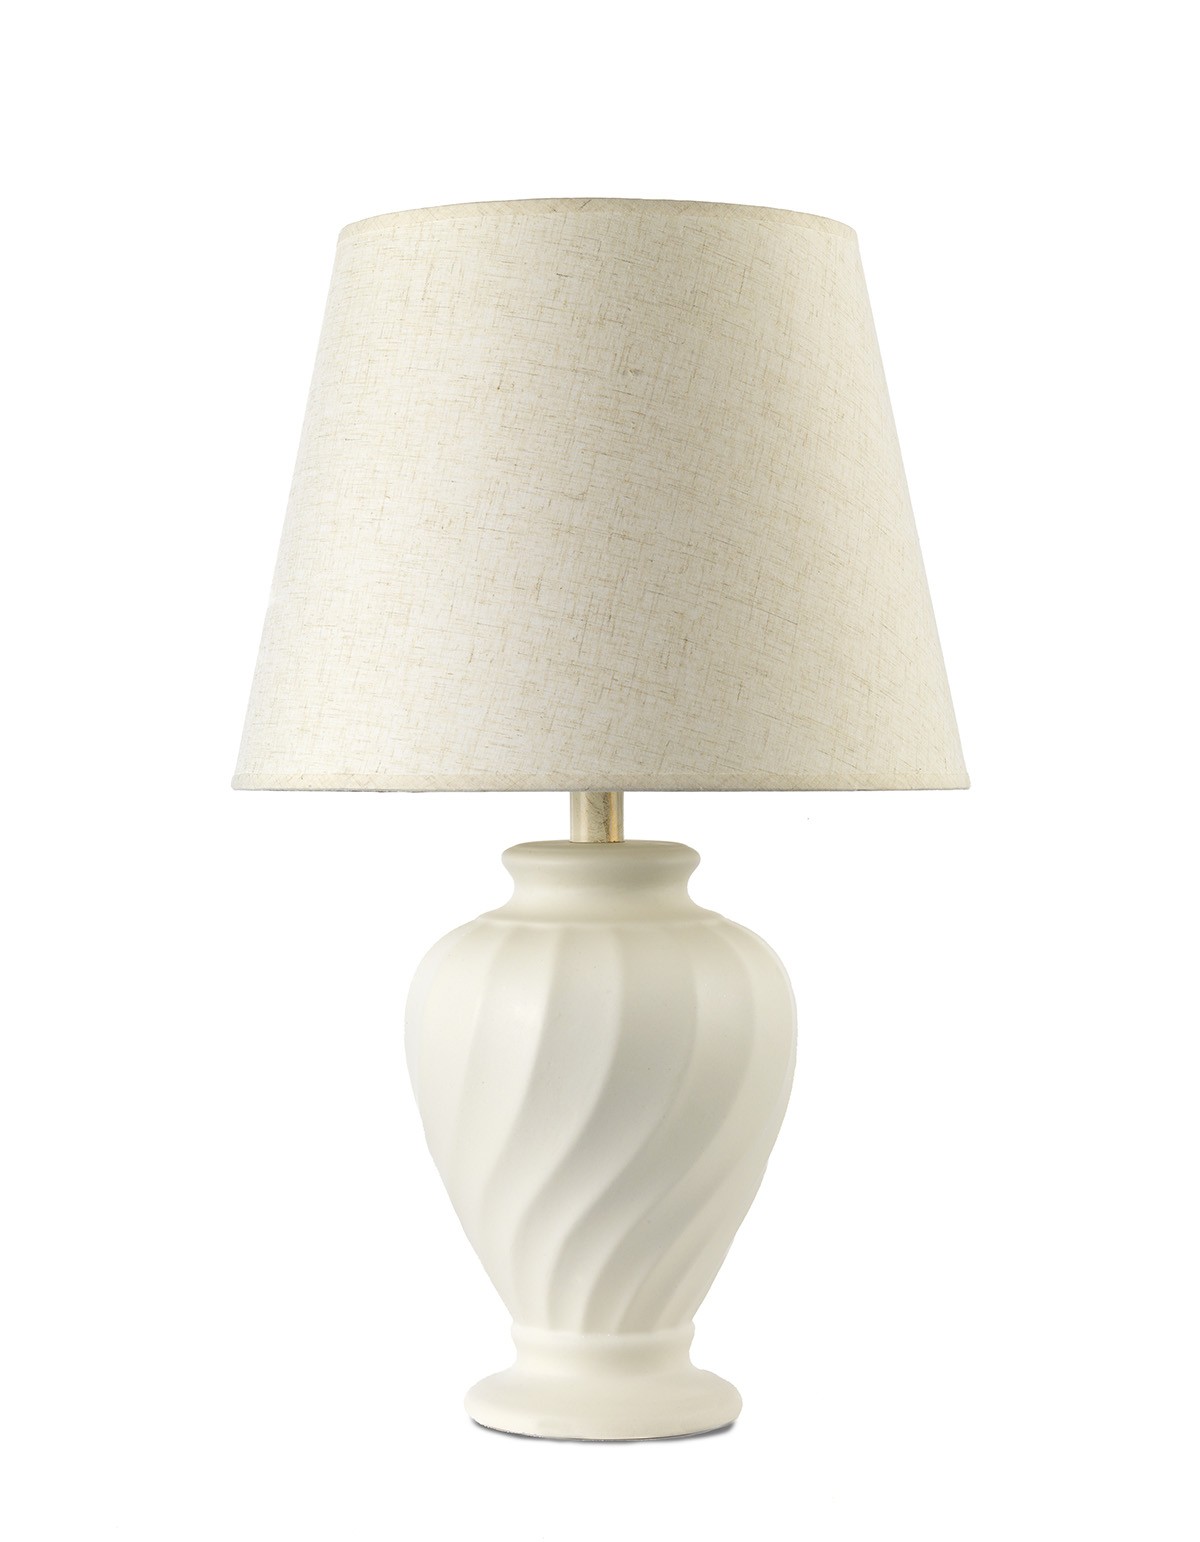 Lume lampada da tavolo classica in ceramica bianca a 1 luce stf 0095